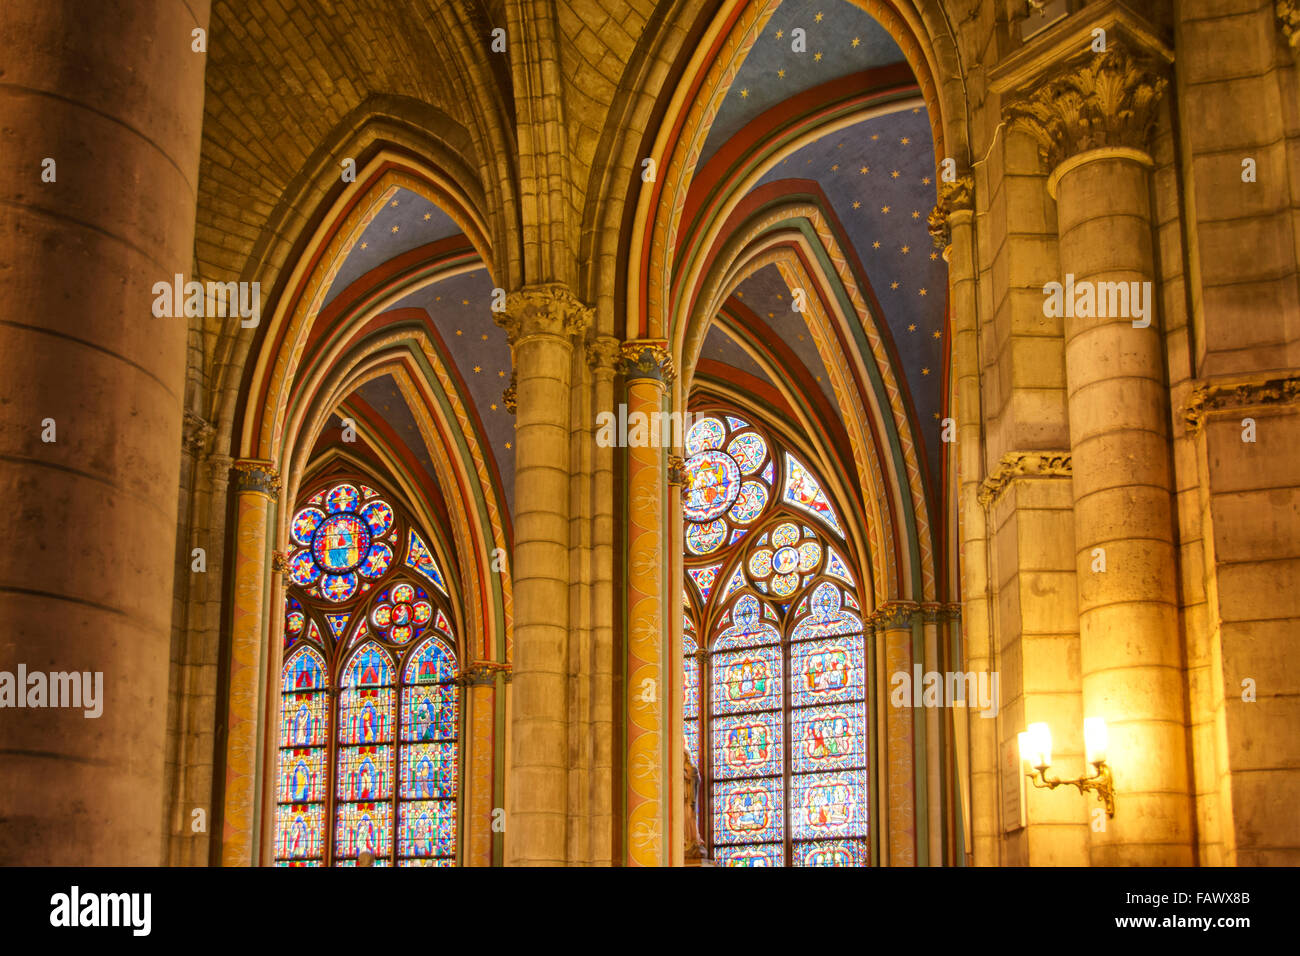 Arches gothiques en cathédrale Notre-Dame, Paris, France Banque D'Images